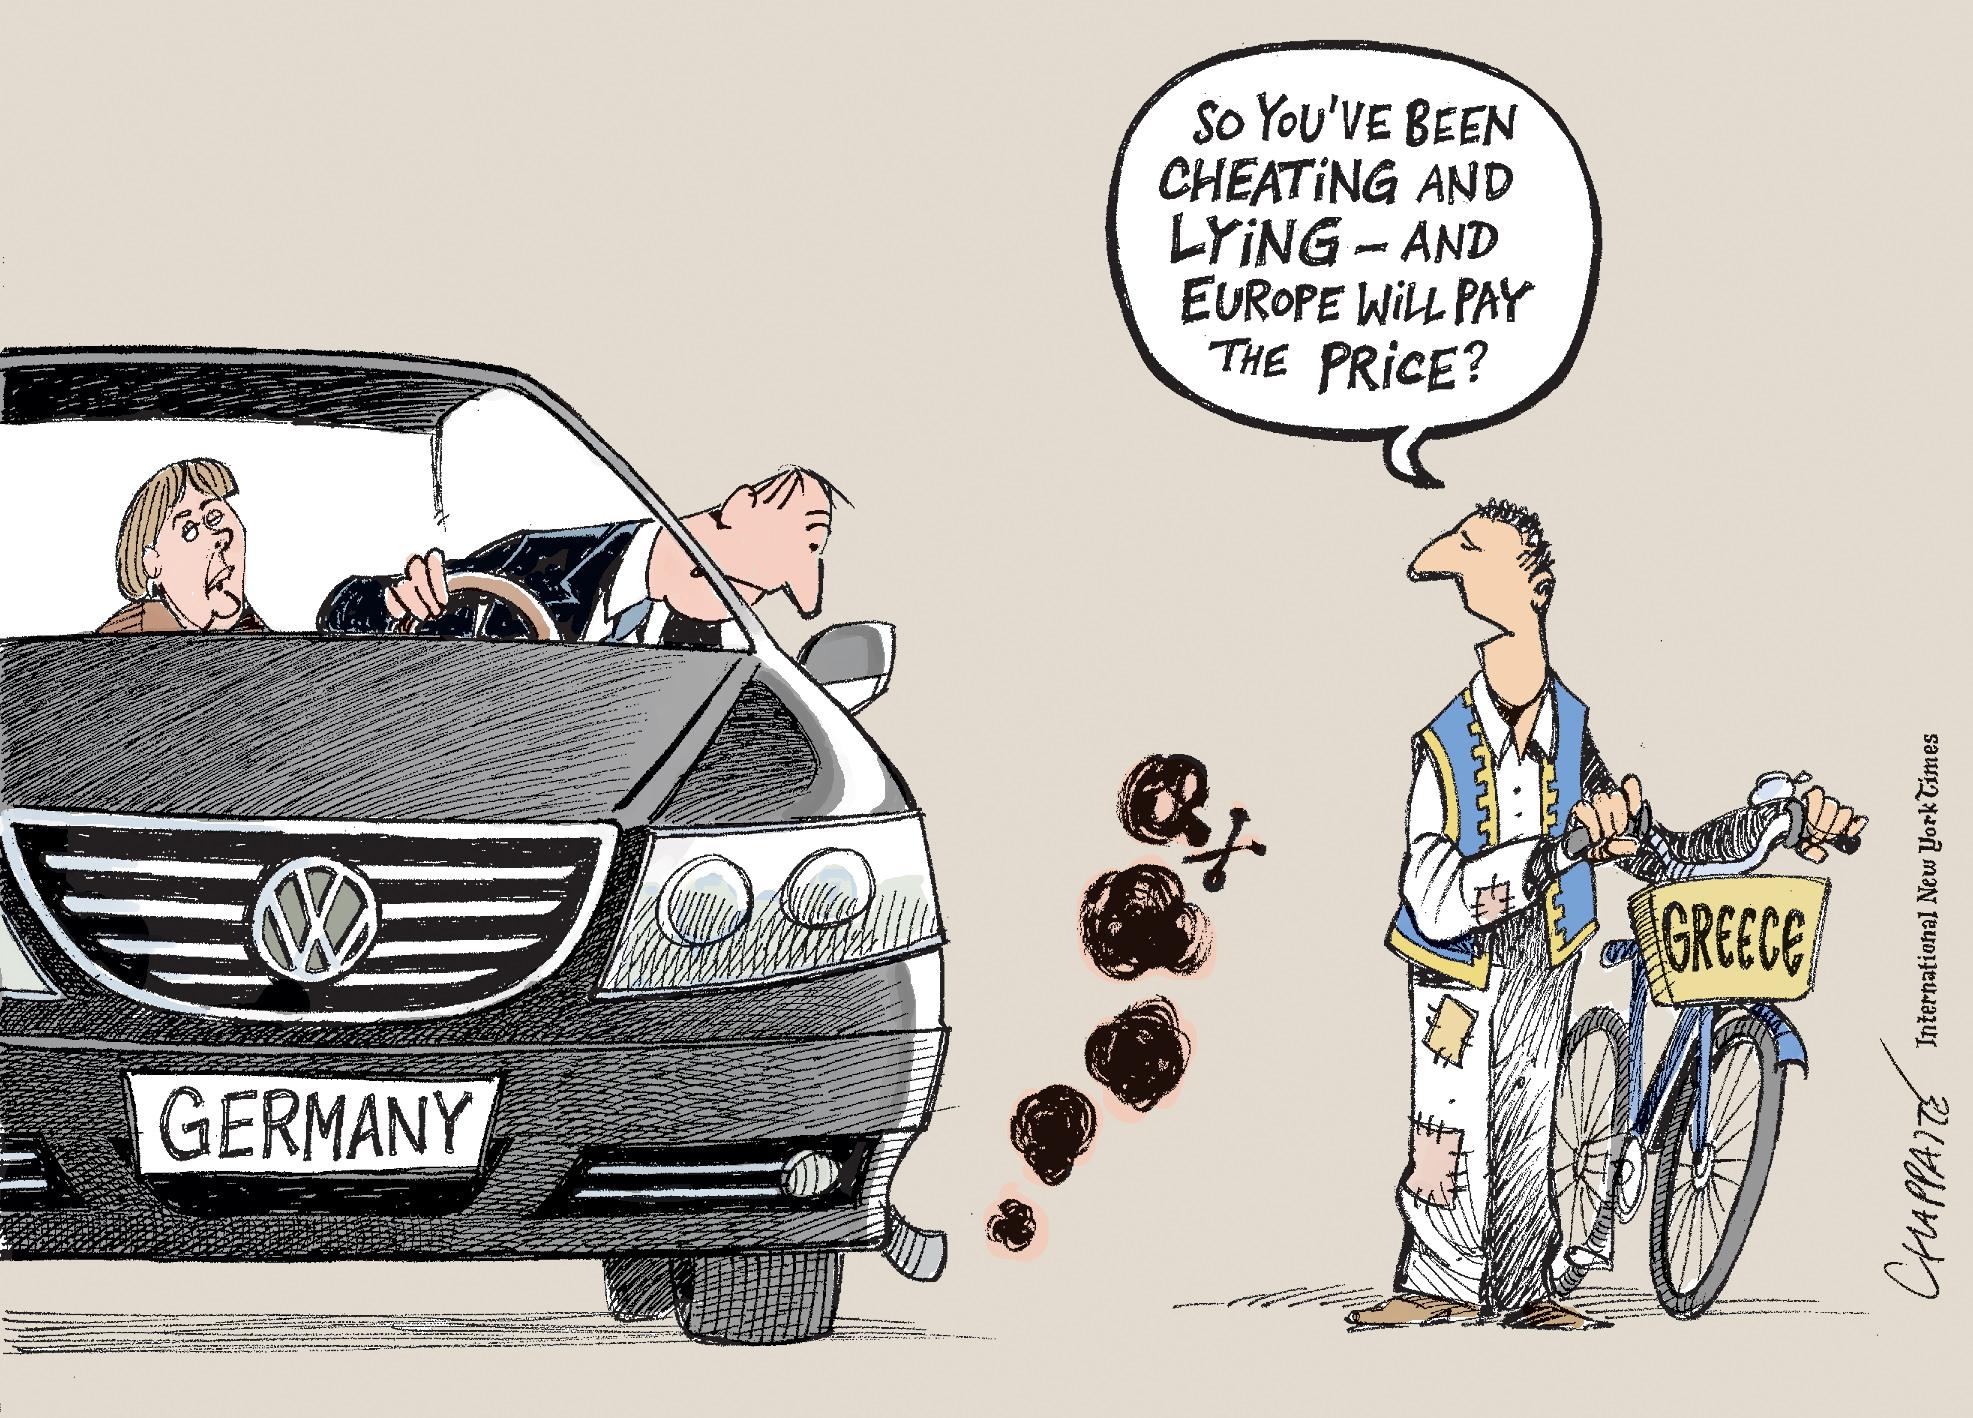 Volkswagen emissions scandal